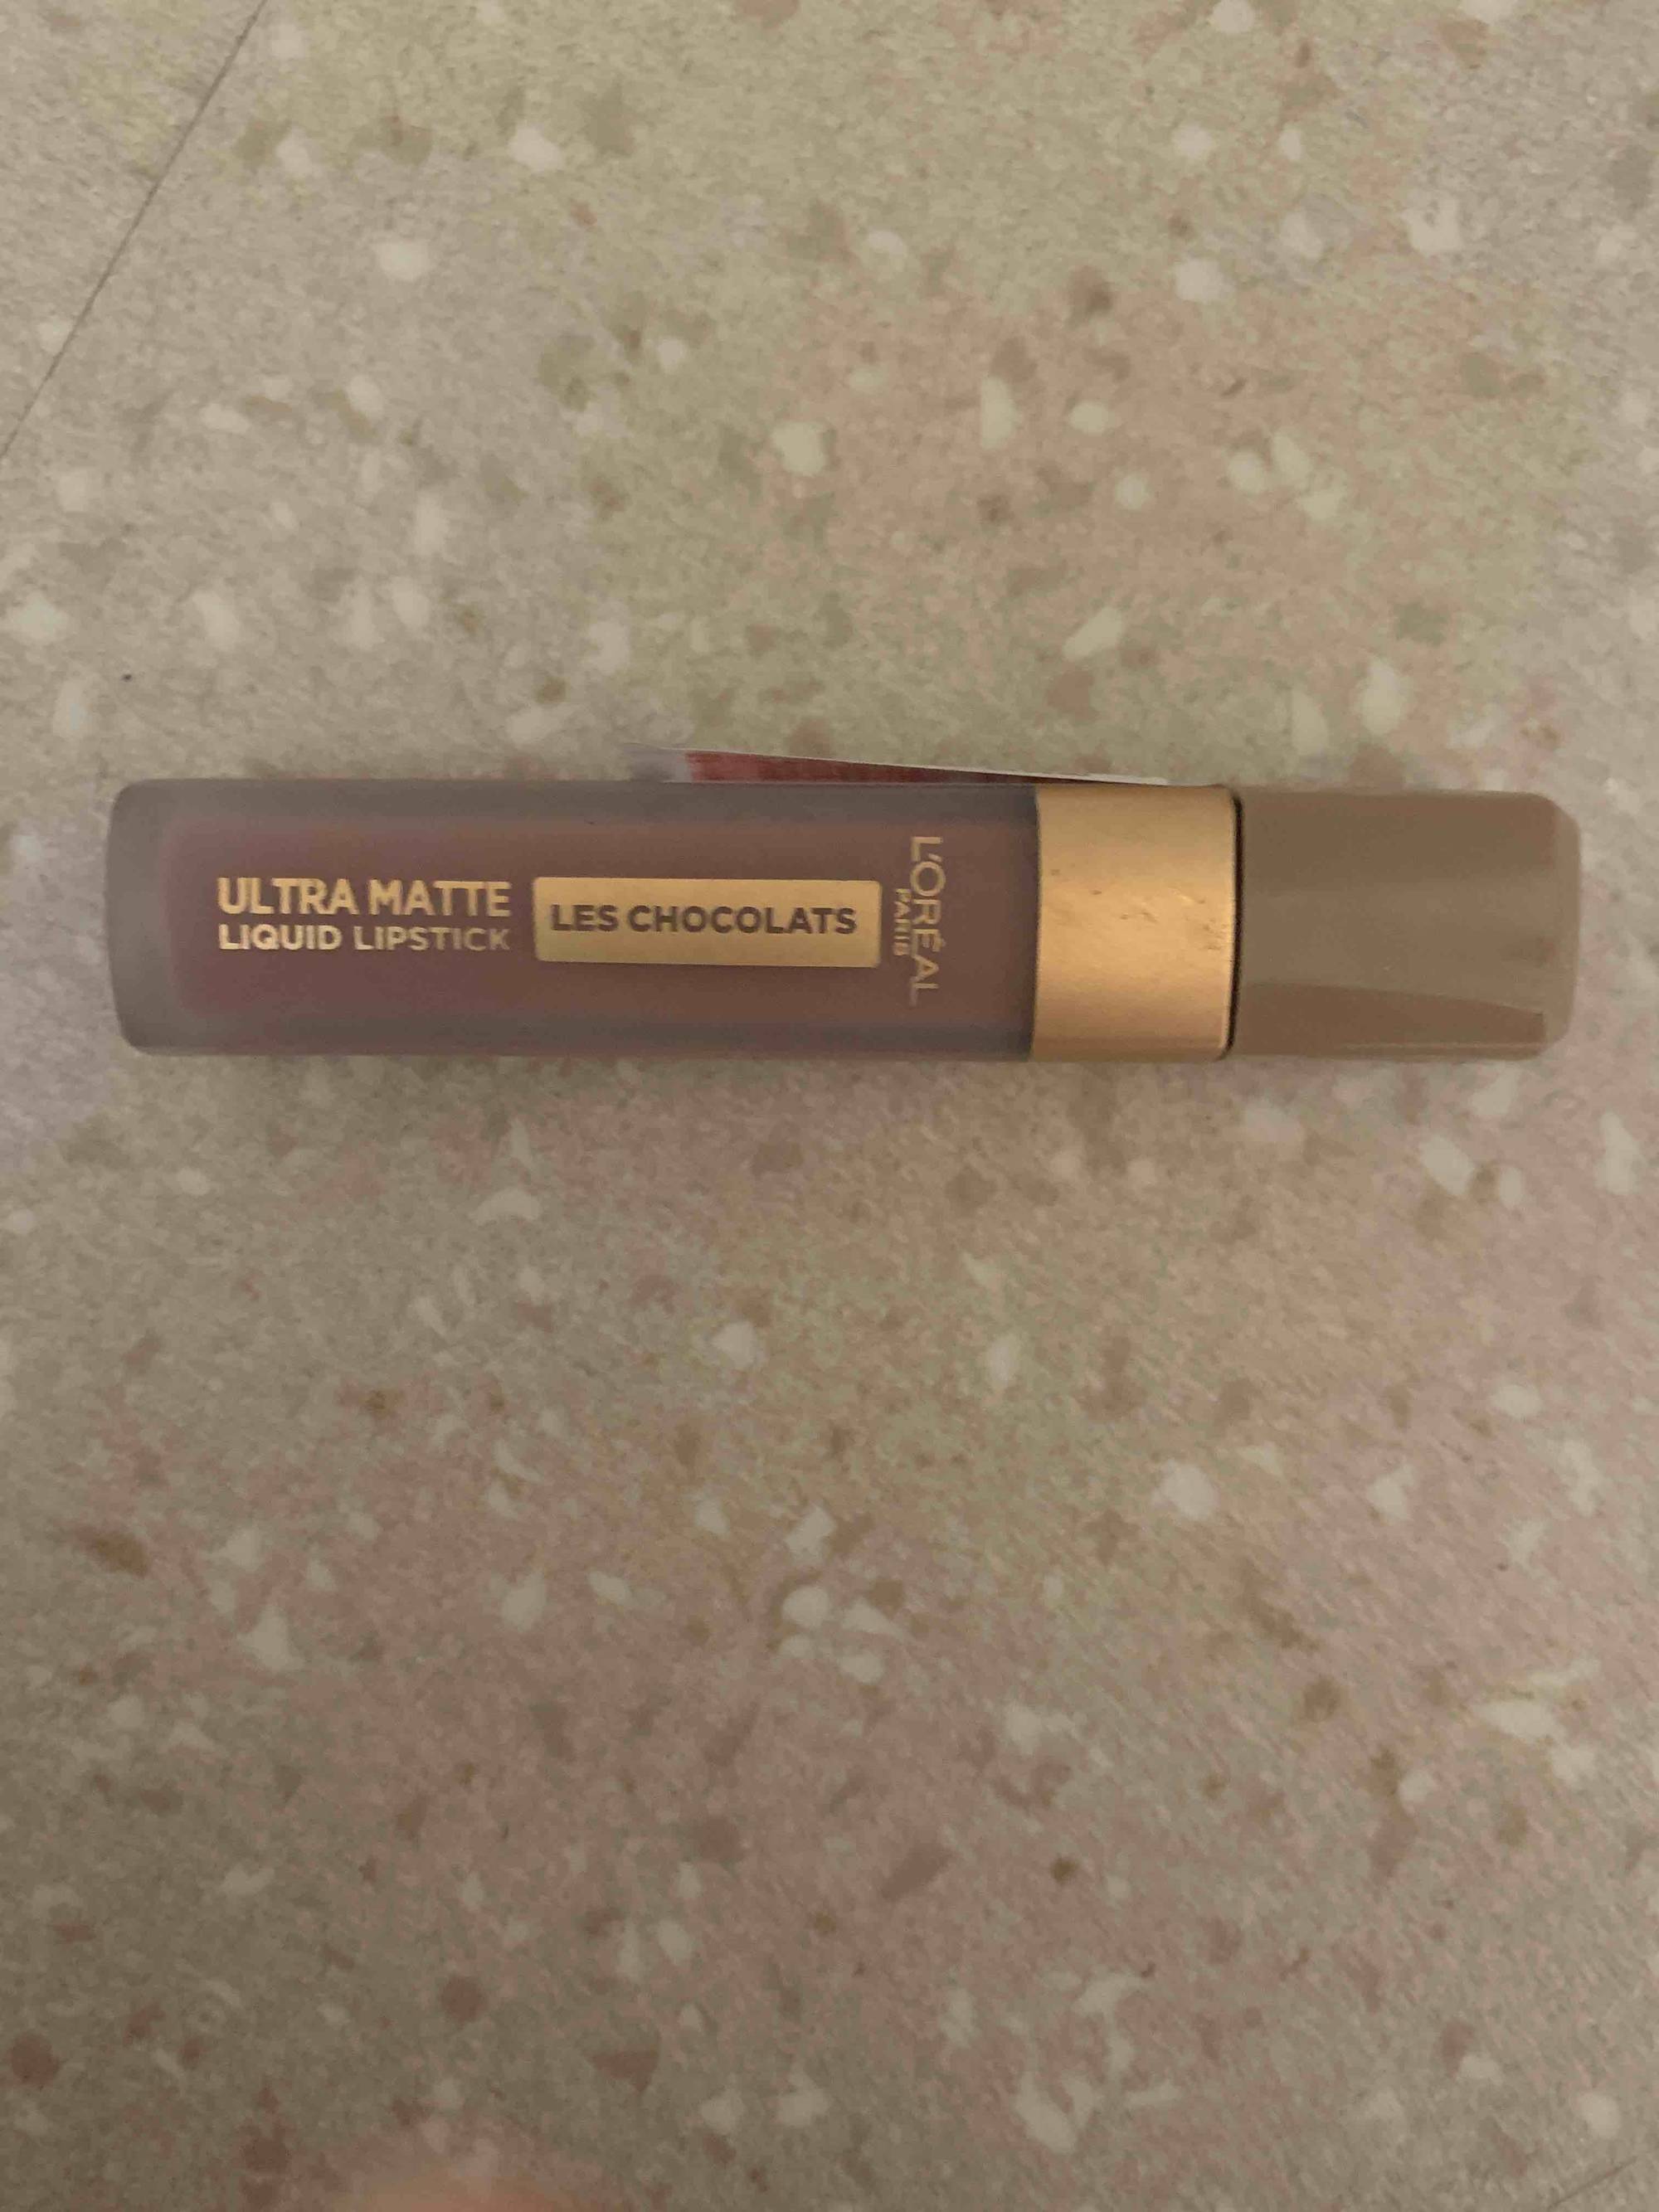 L'ORÉAL PARIS - Les chocolats - Liquid lipstick ultra matte